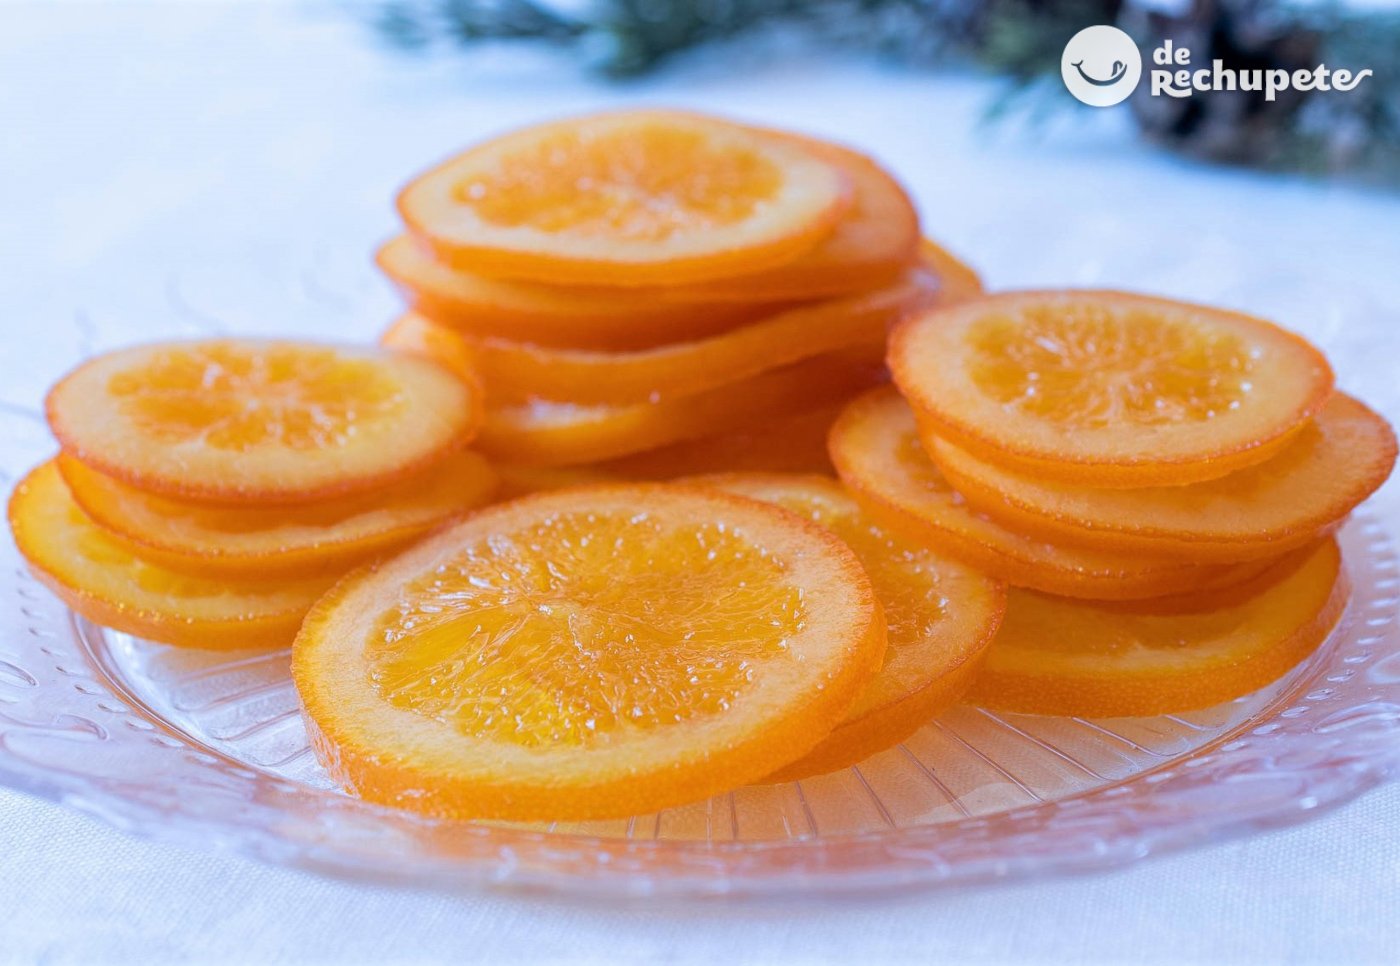 Cómo hacer naranjas confitadas caseras para el roscón - Recetas de rechupete